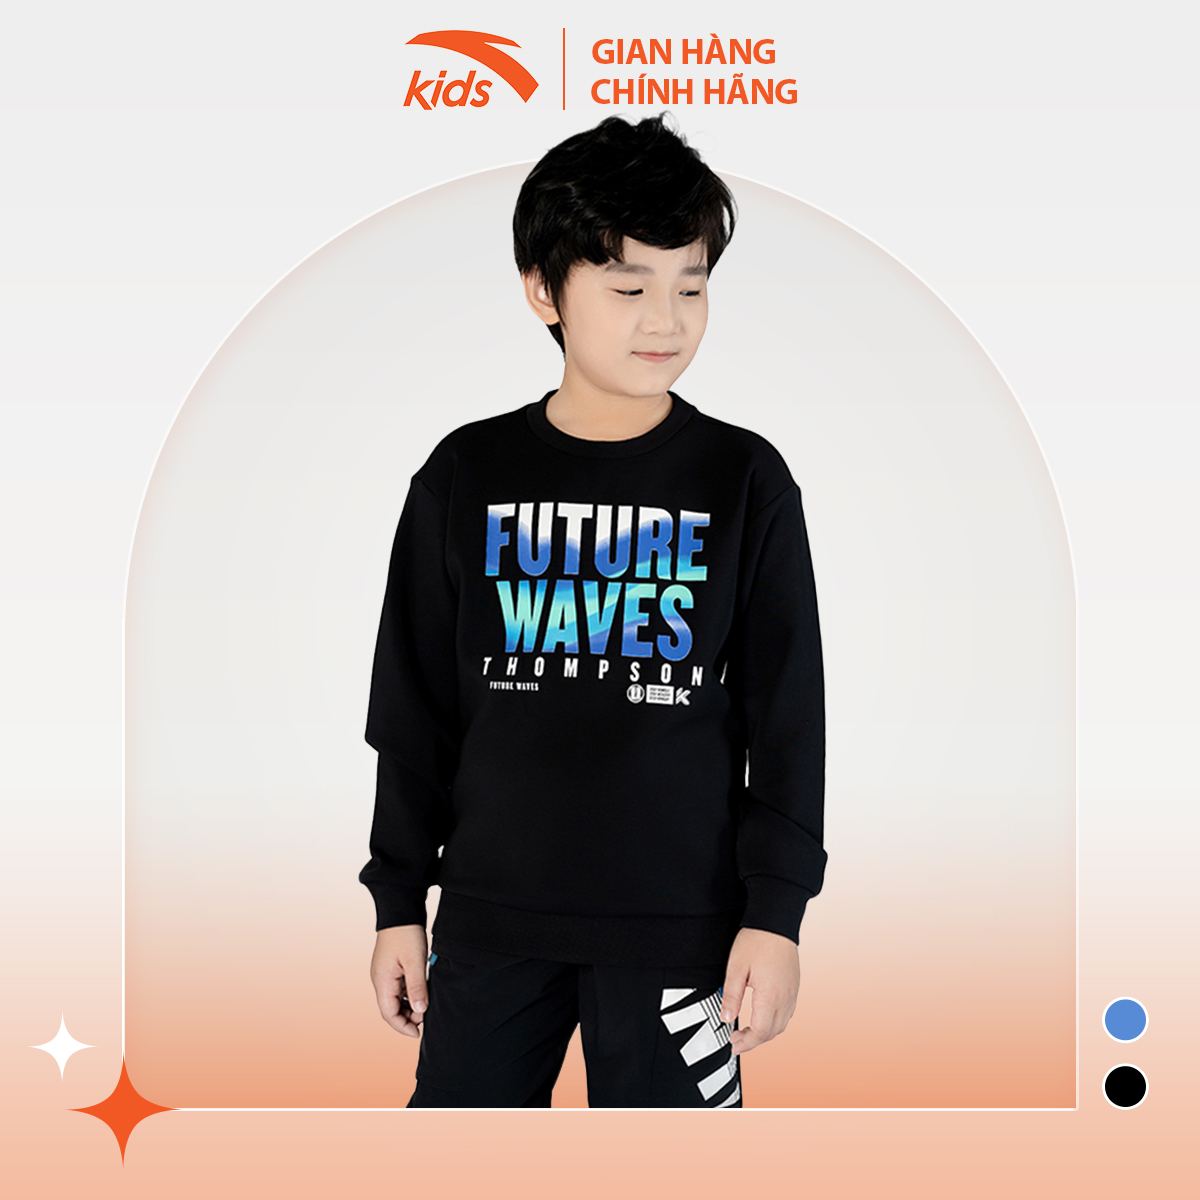 Áo nỉ thời trang bé trai Anta Kids kiểu dáng basic, chất nỉ da cá cao cấp 352241703